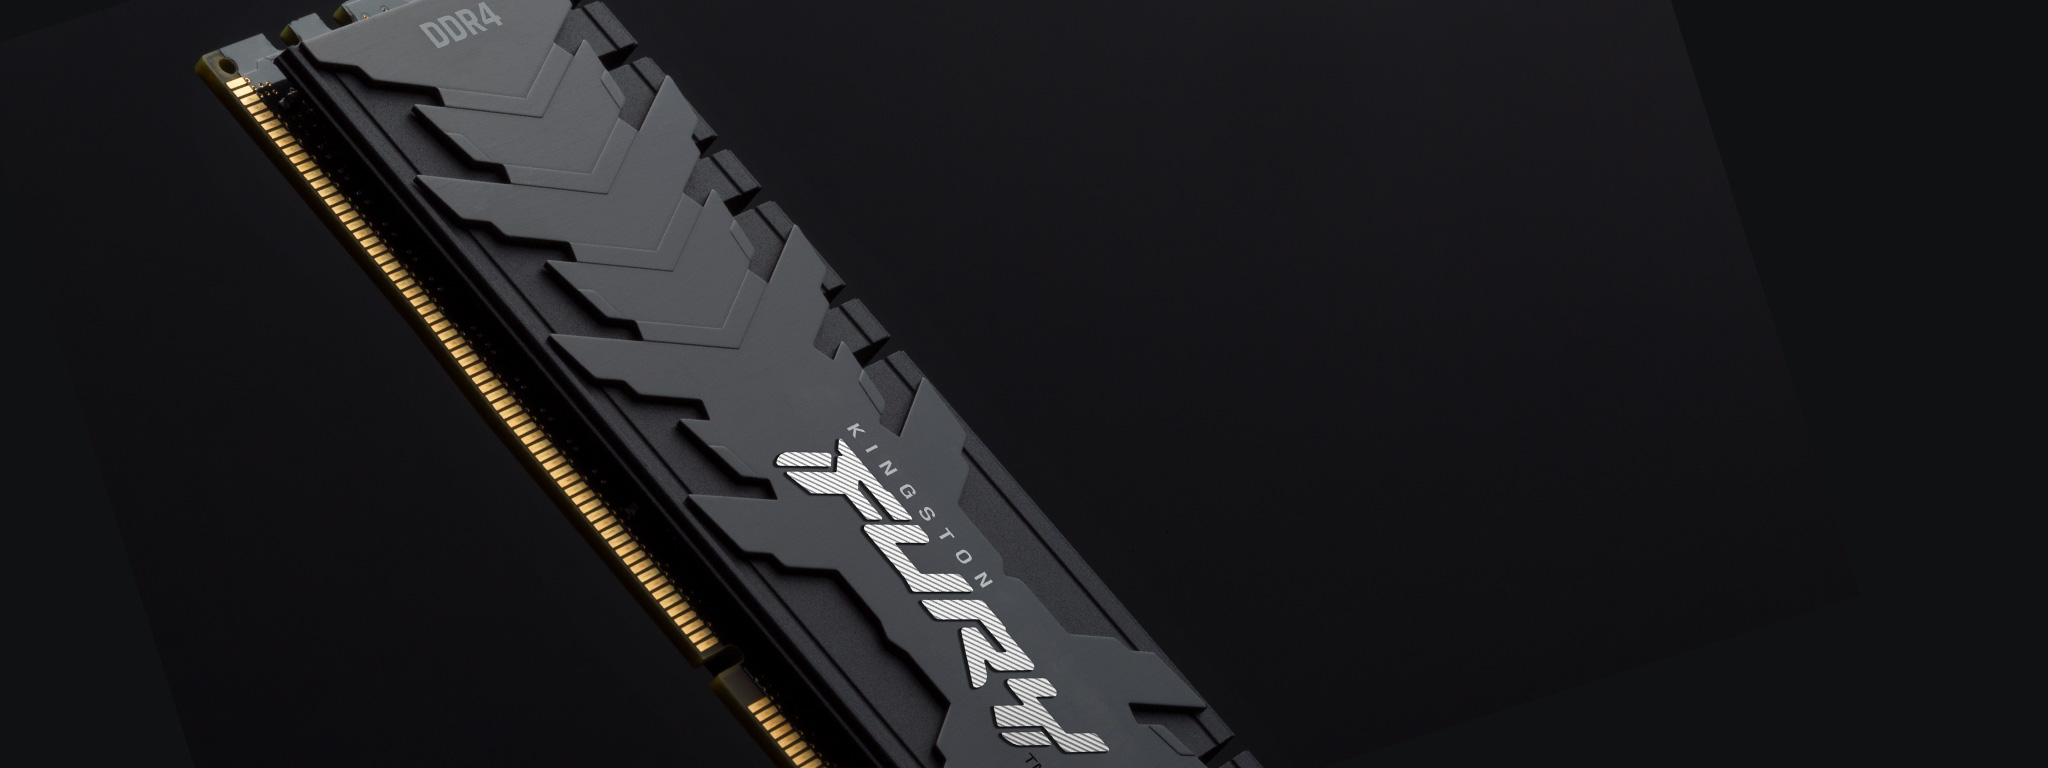 โมดูลหน่วยความจำ Kingston FURY Renegade DDR4 มองเห็นแค่ครึ่งเดียว โดยมีพื้นหลังสีดำทึบ